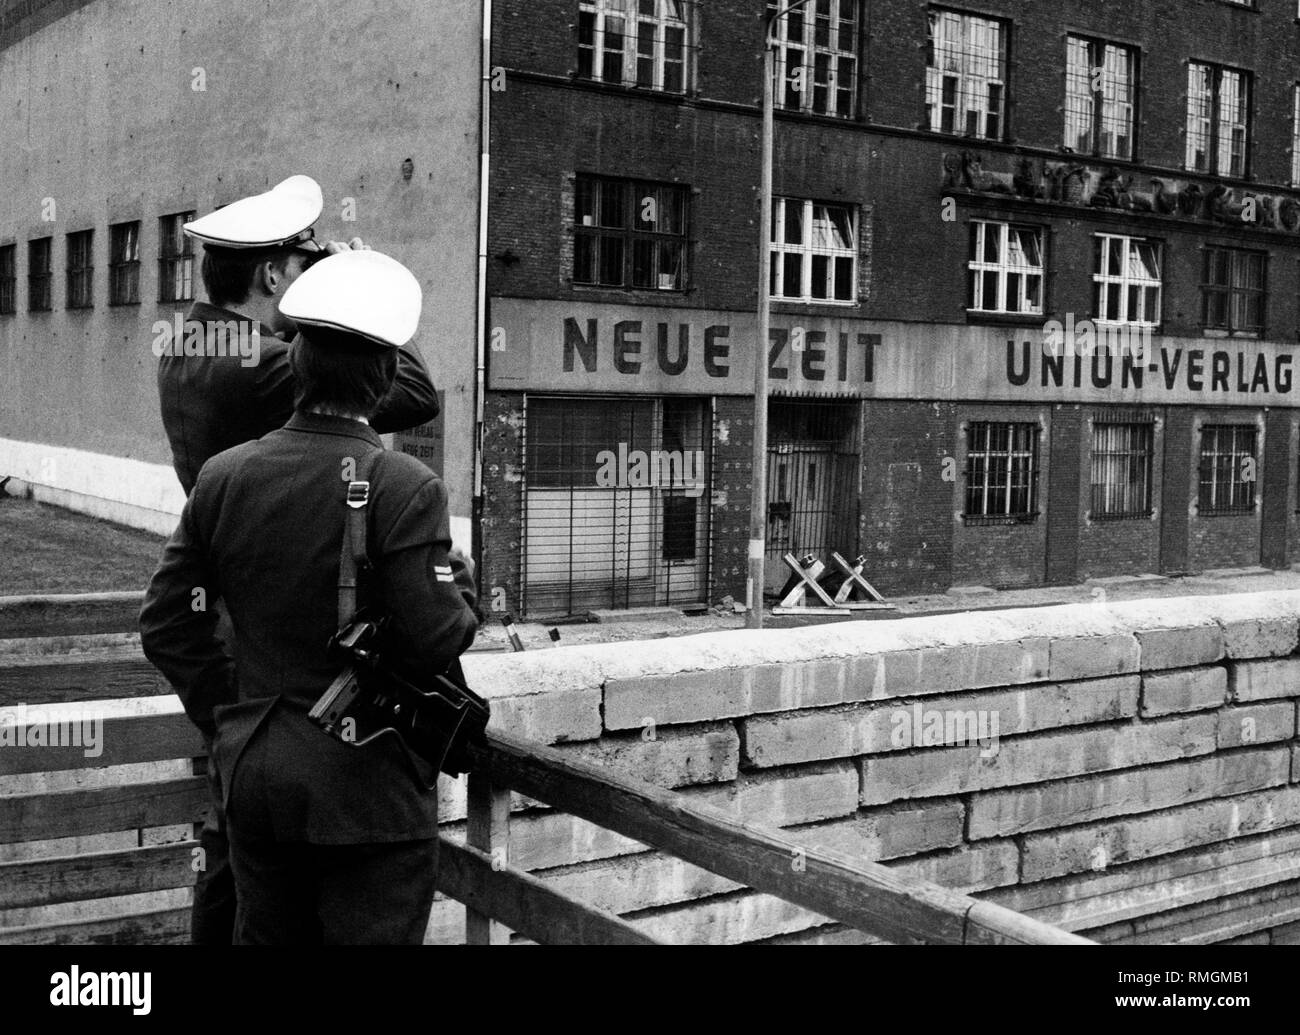 Undatiertes Bild des Verlags Union-Verlag, der Herausgeber der "Neuen Zeit" der Ost-CDU direkt an der Wand, im Vordergrund West-Berliner Polizisten. Stockfoto